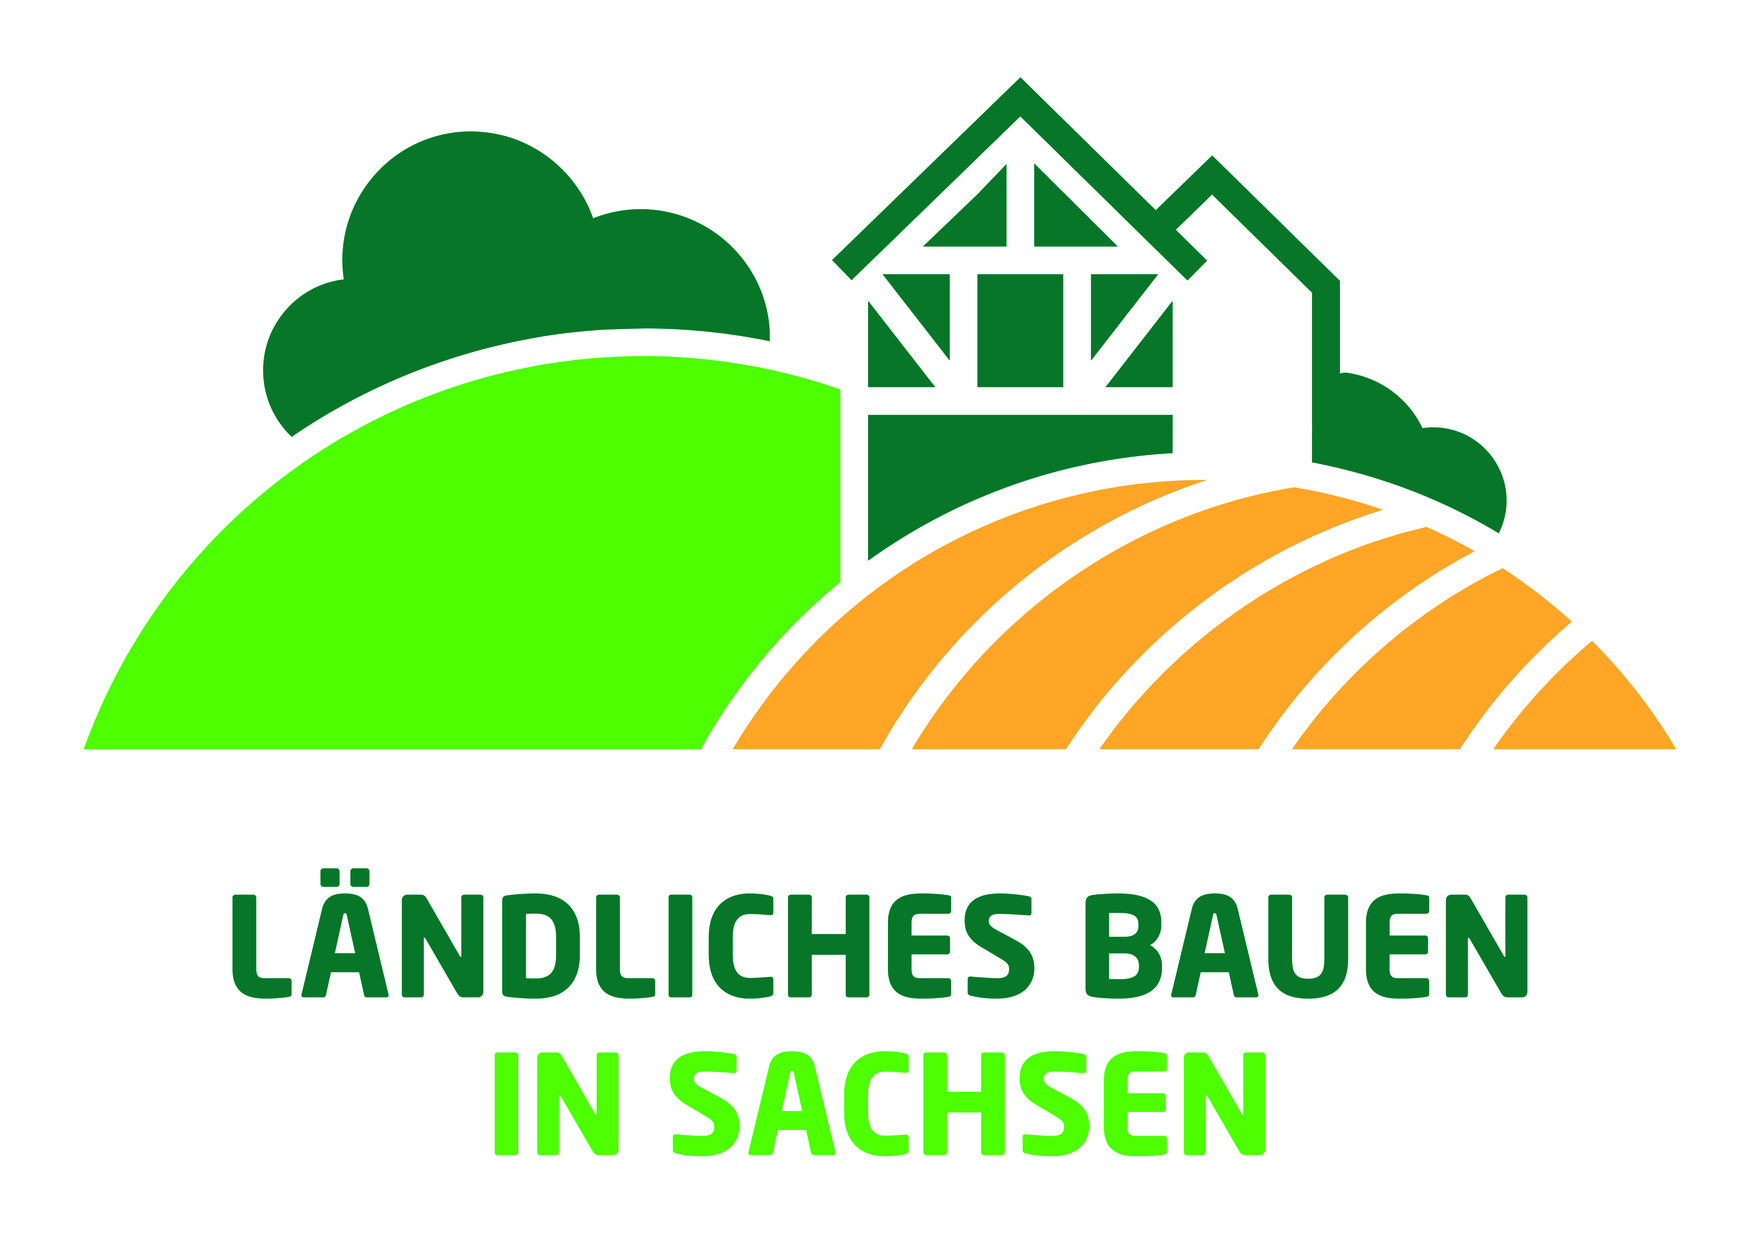 Zu sehen ist das Logo "Ländliches Bauen", eine abstrakte Darstellung eines Hauses und im Vordergrund ein Feld.